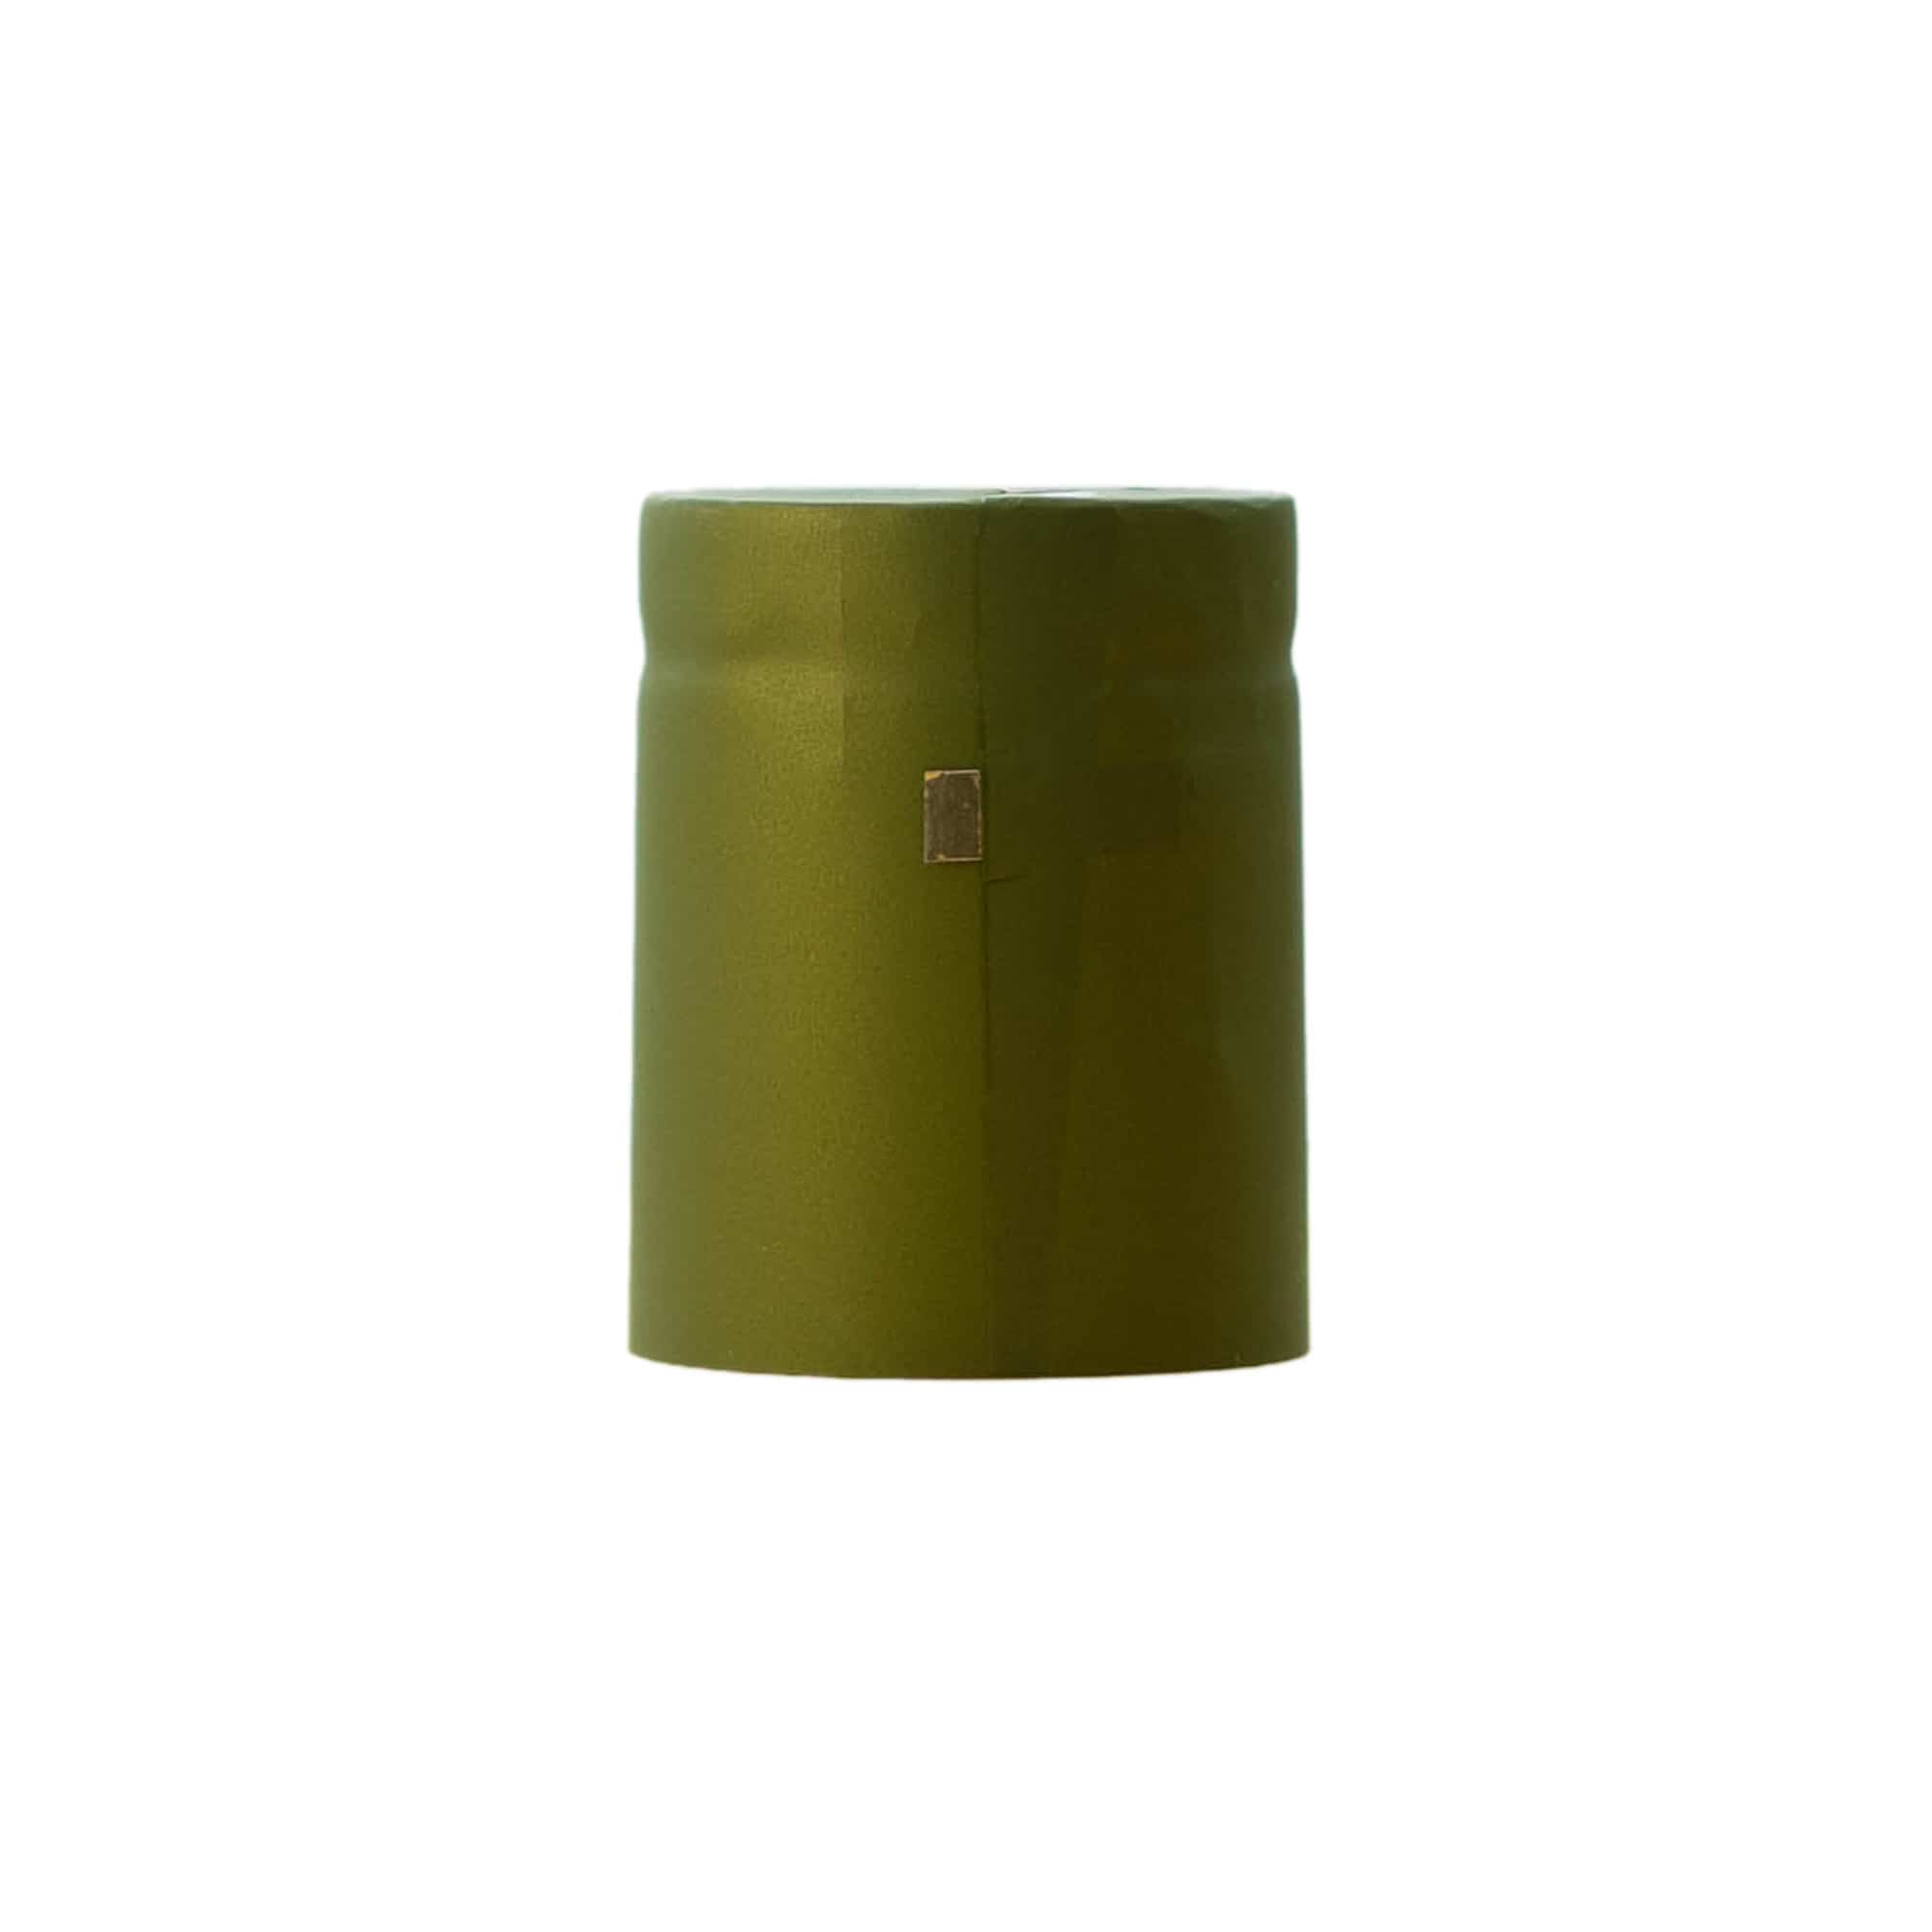 Krimpcapsule 32x41, pvc-kunststof, olijfgroen